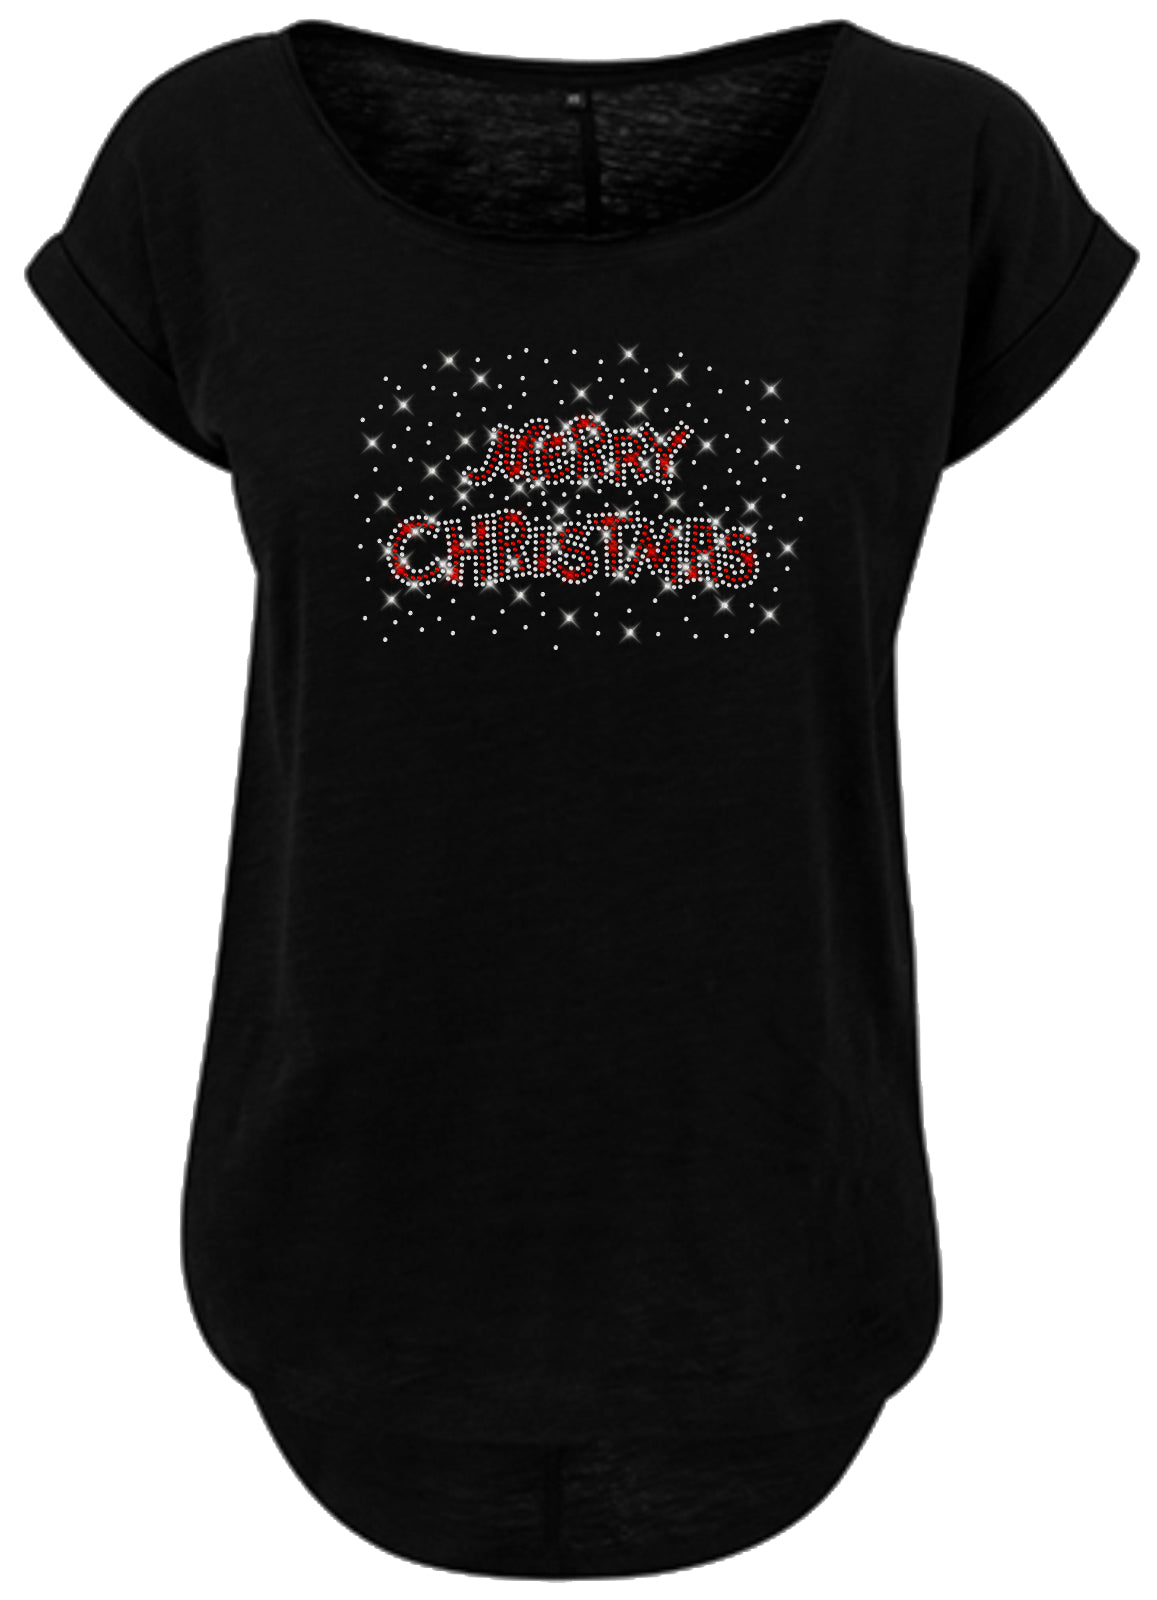 Blingeling®Shirts Damen T-Shirt   Merry Christmas Schriftzug in Strass Kristall und Rot